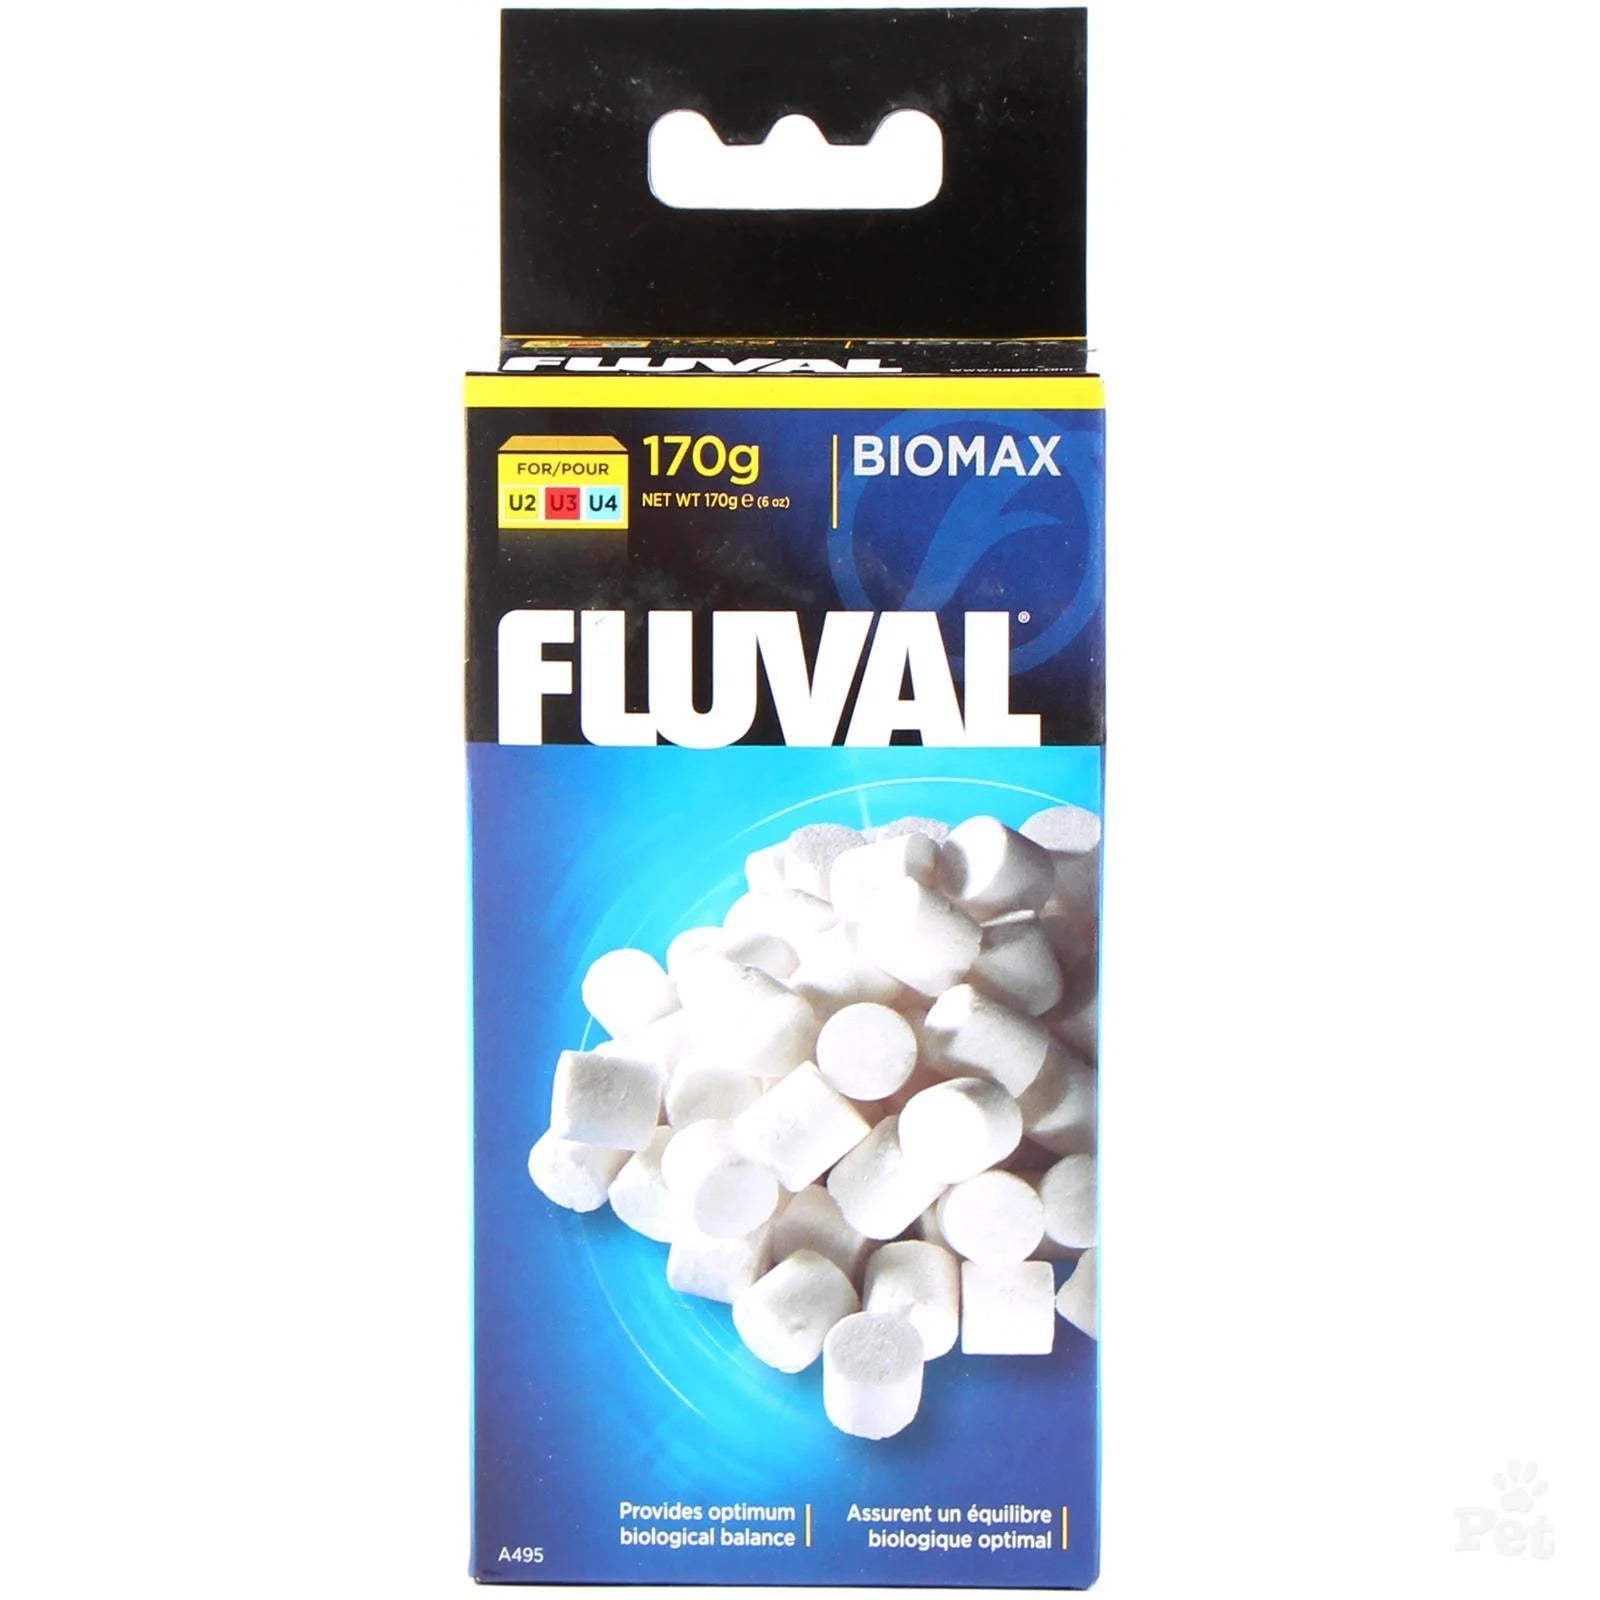 Fluval Bio Max 170g Filter Media